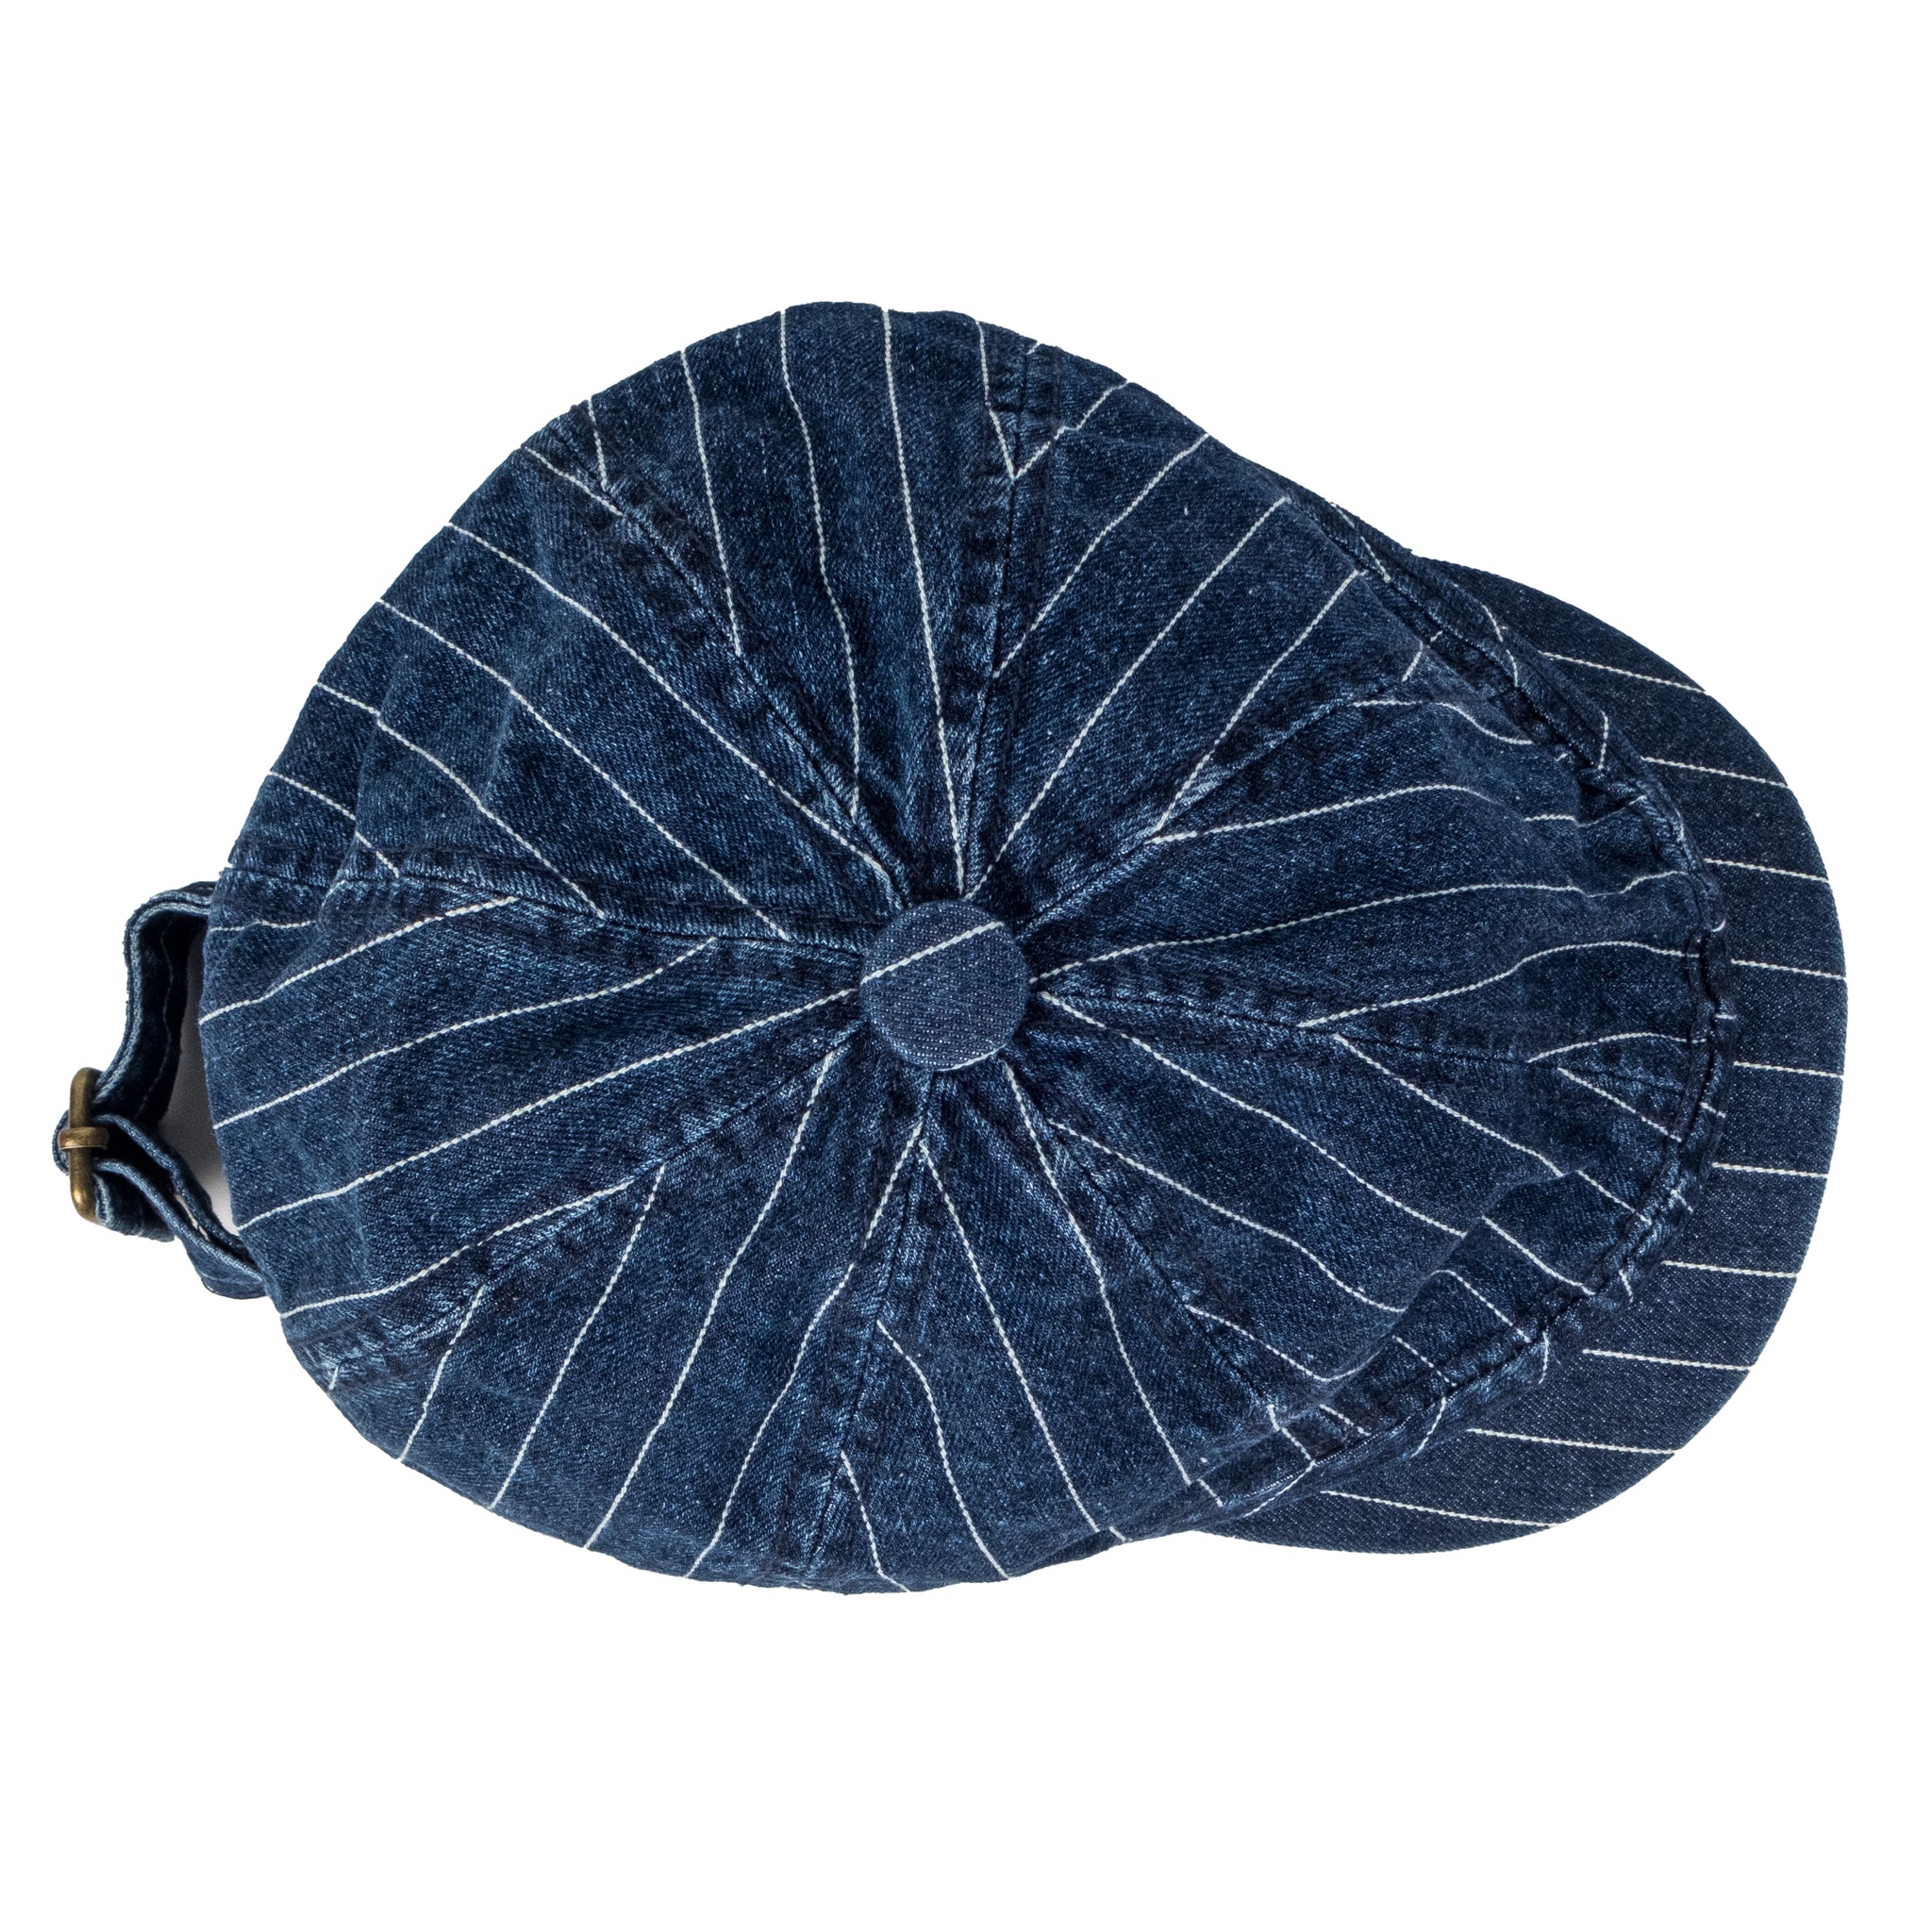 Chokore Striped Denim Ivy Cap (Blue)